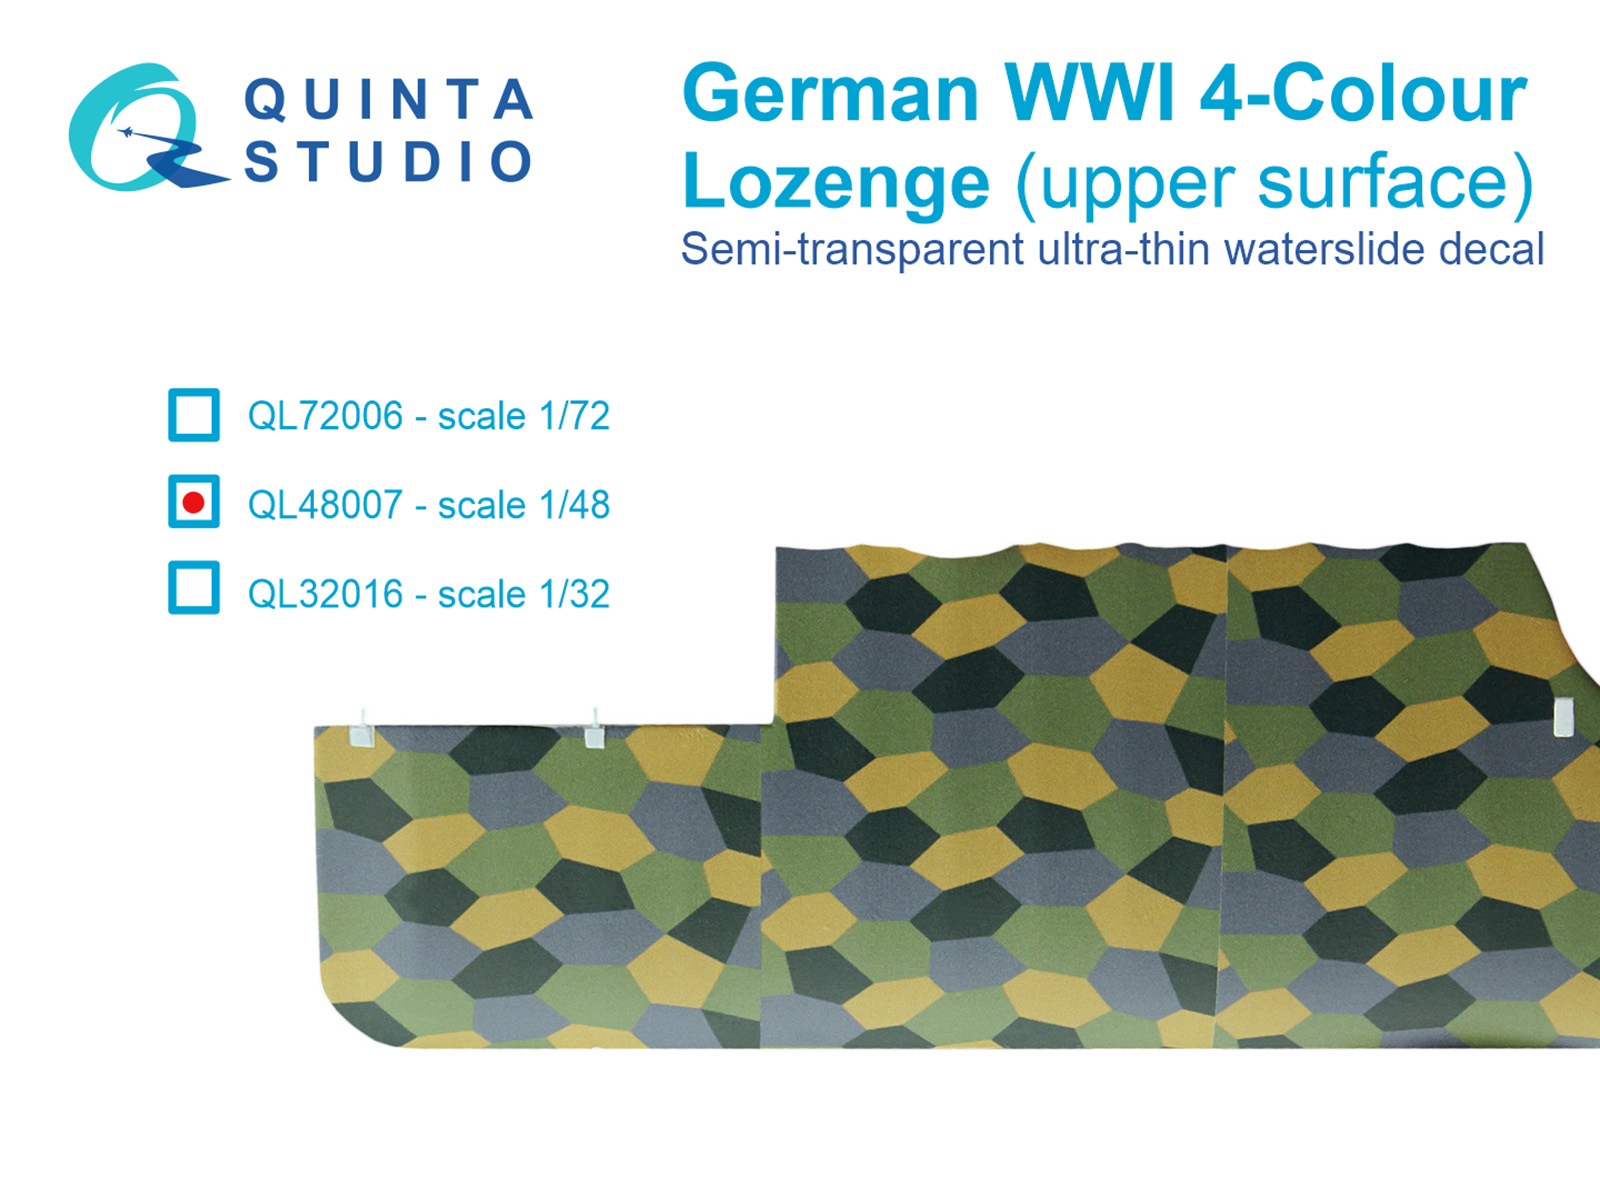 QL48007  декали  Германский WWI 4-цветный Лозенг (верхние поверхности)  (1:48)